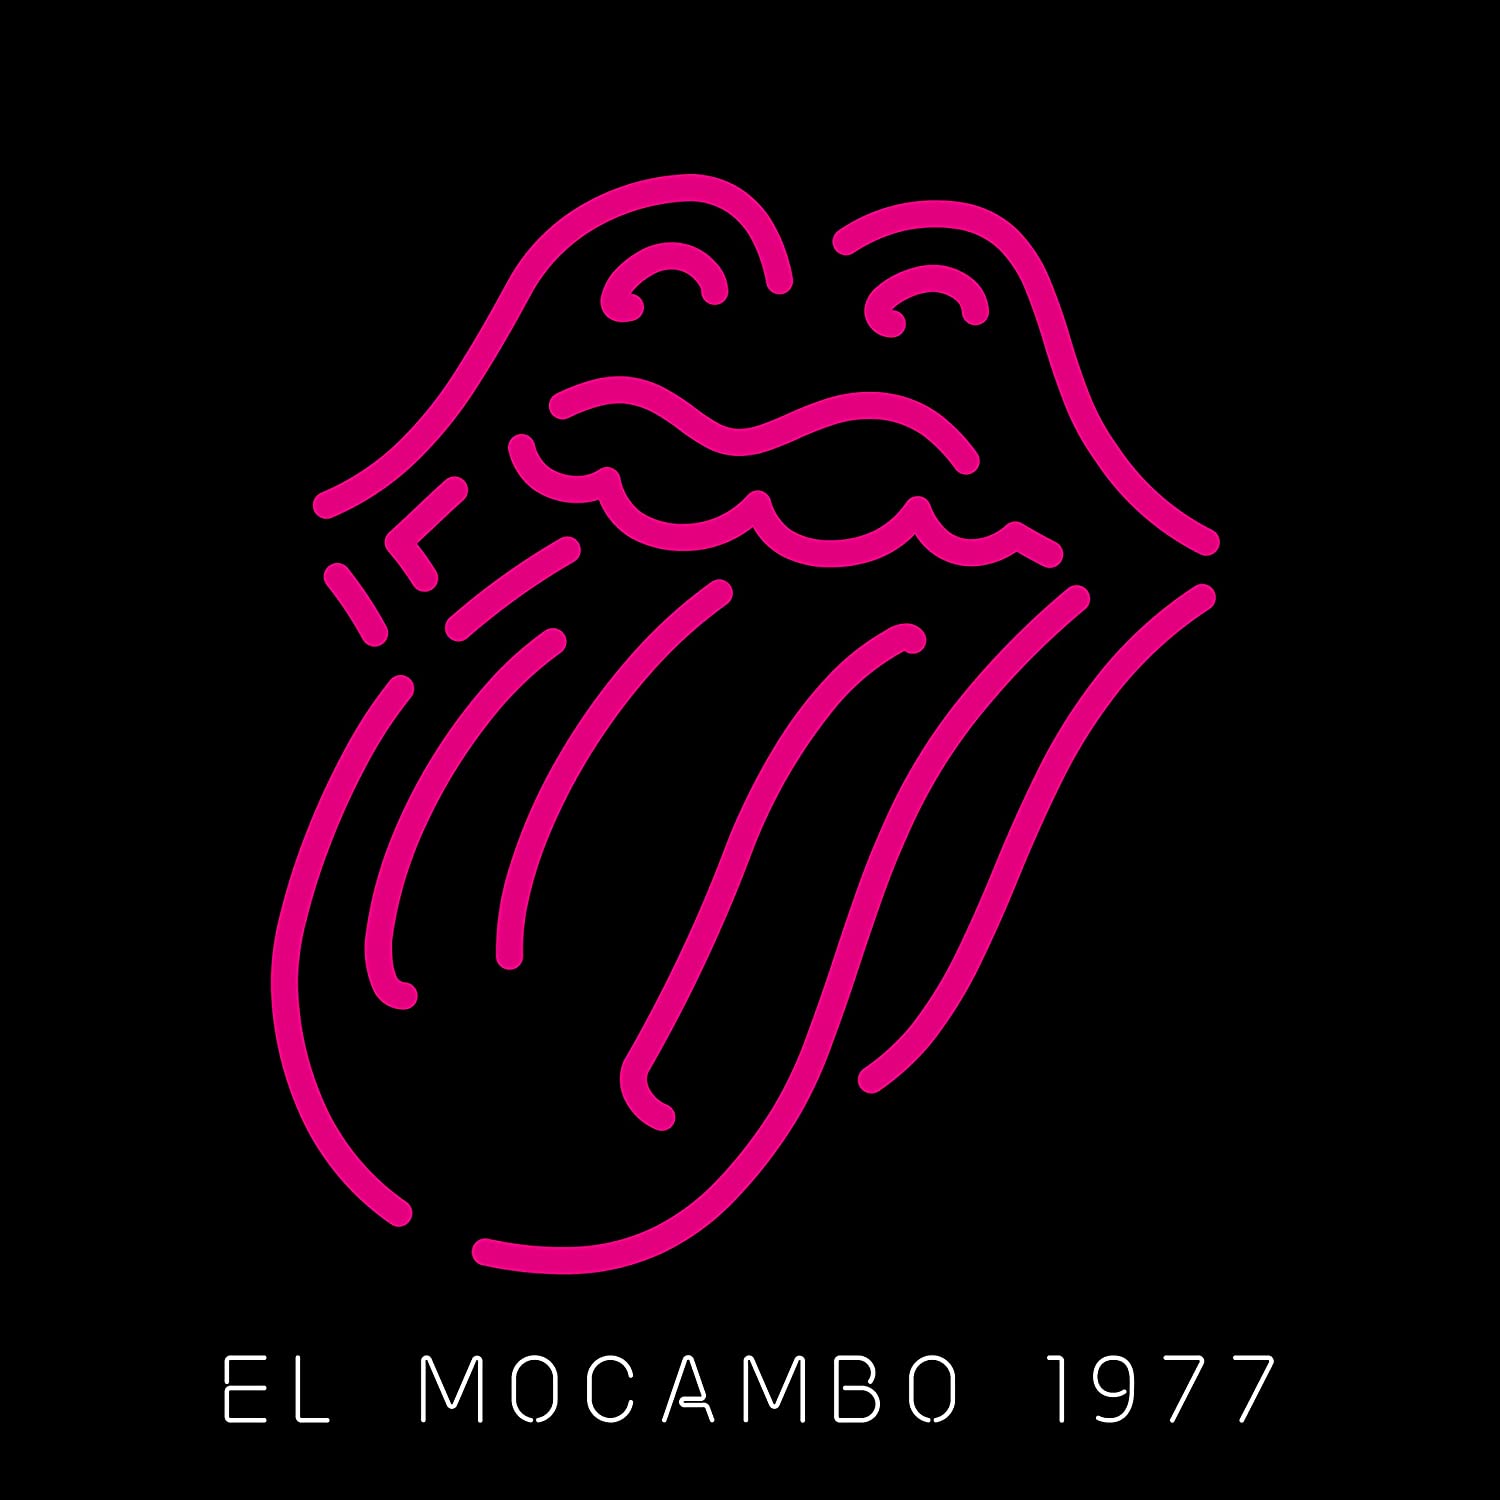 The Rolling Stones – El Mocambo 1977